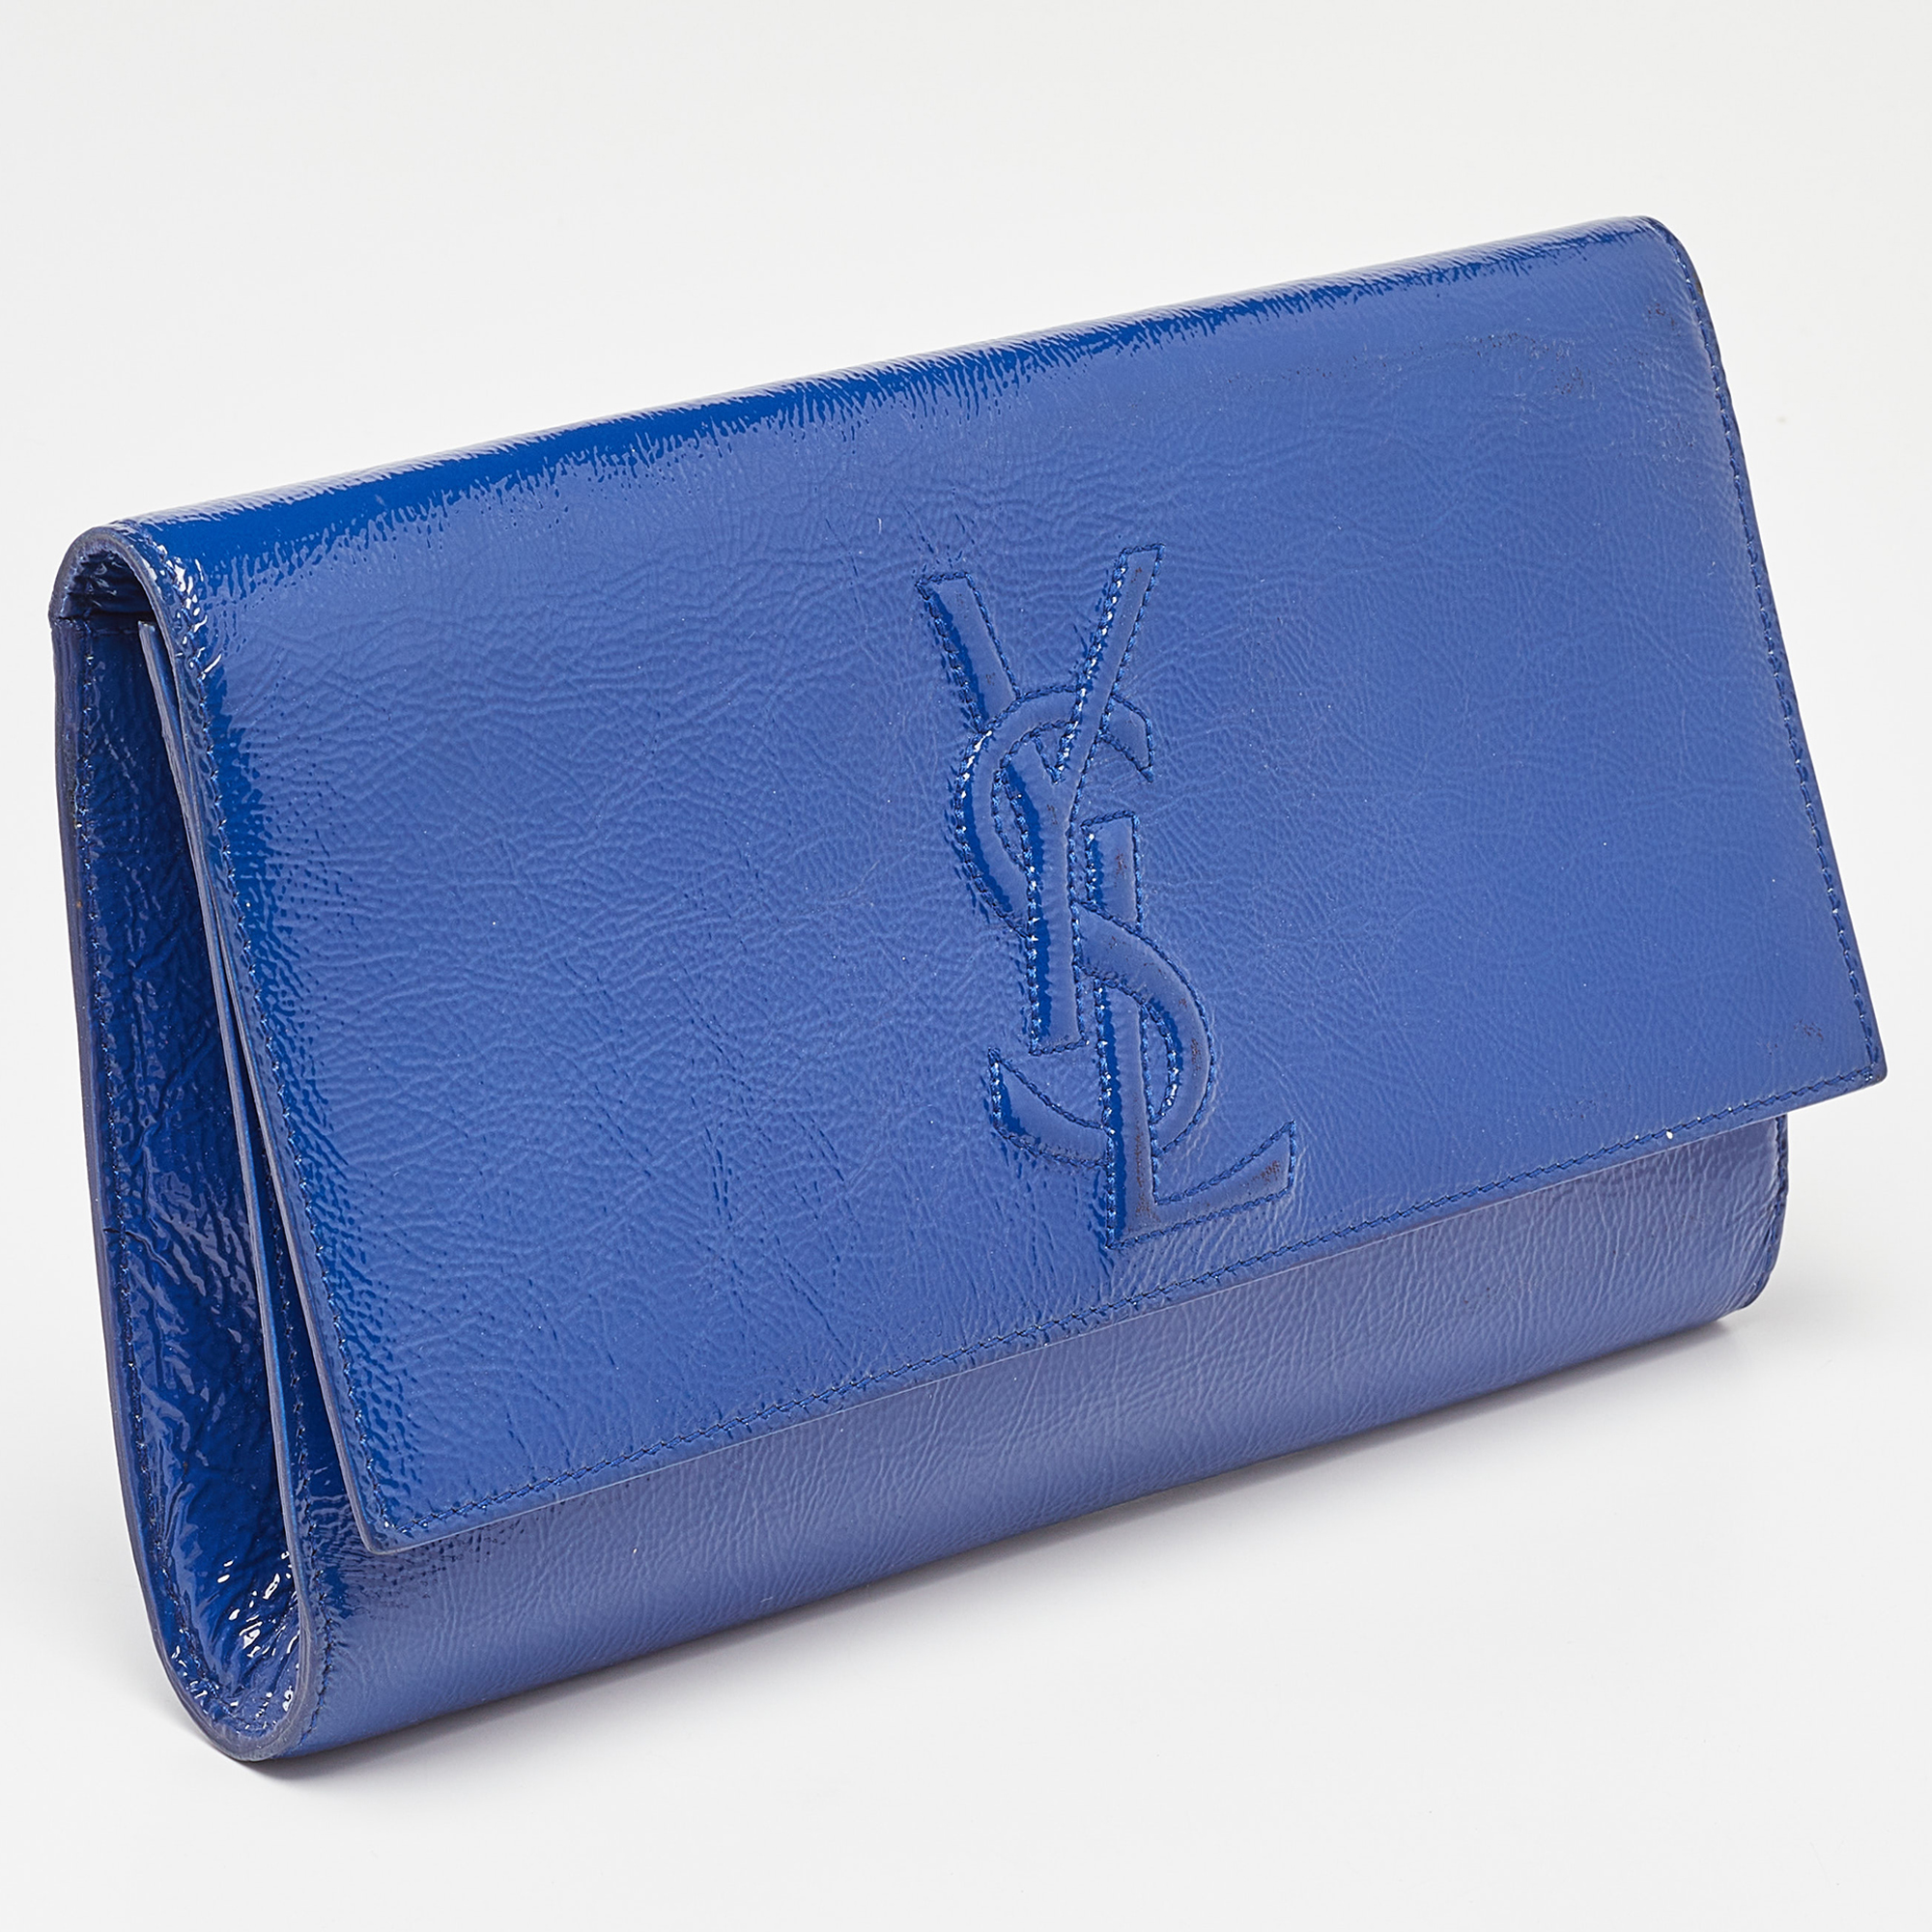 Yves Saint Laurent Blue Patent Leather Belle De Jour Flap Clutch